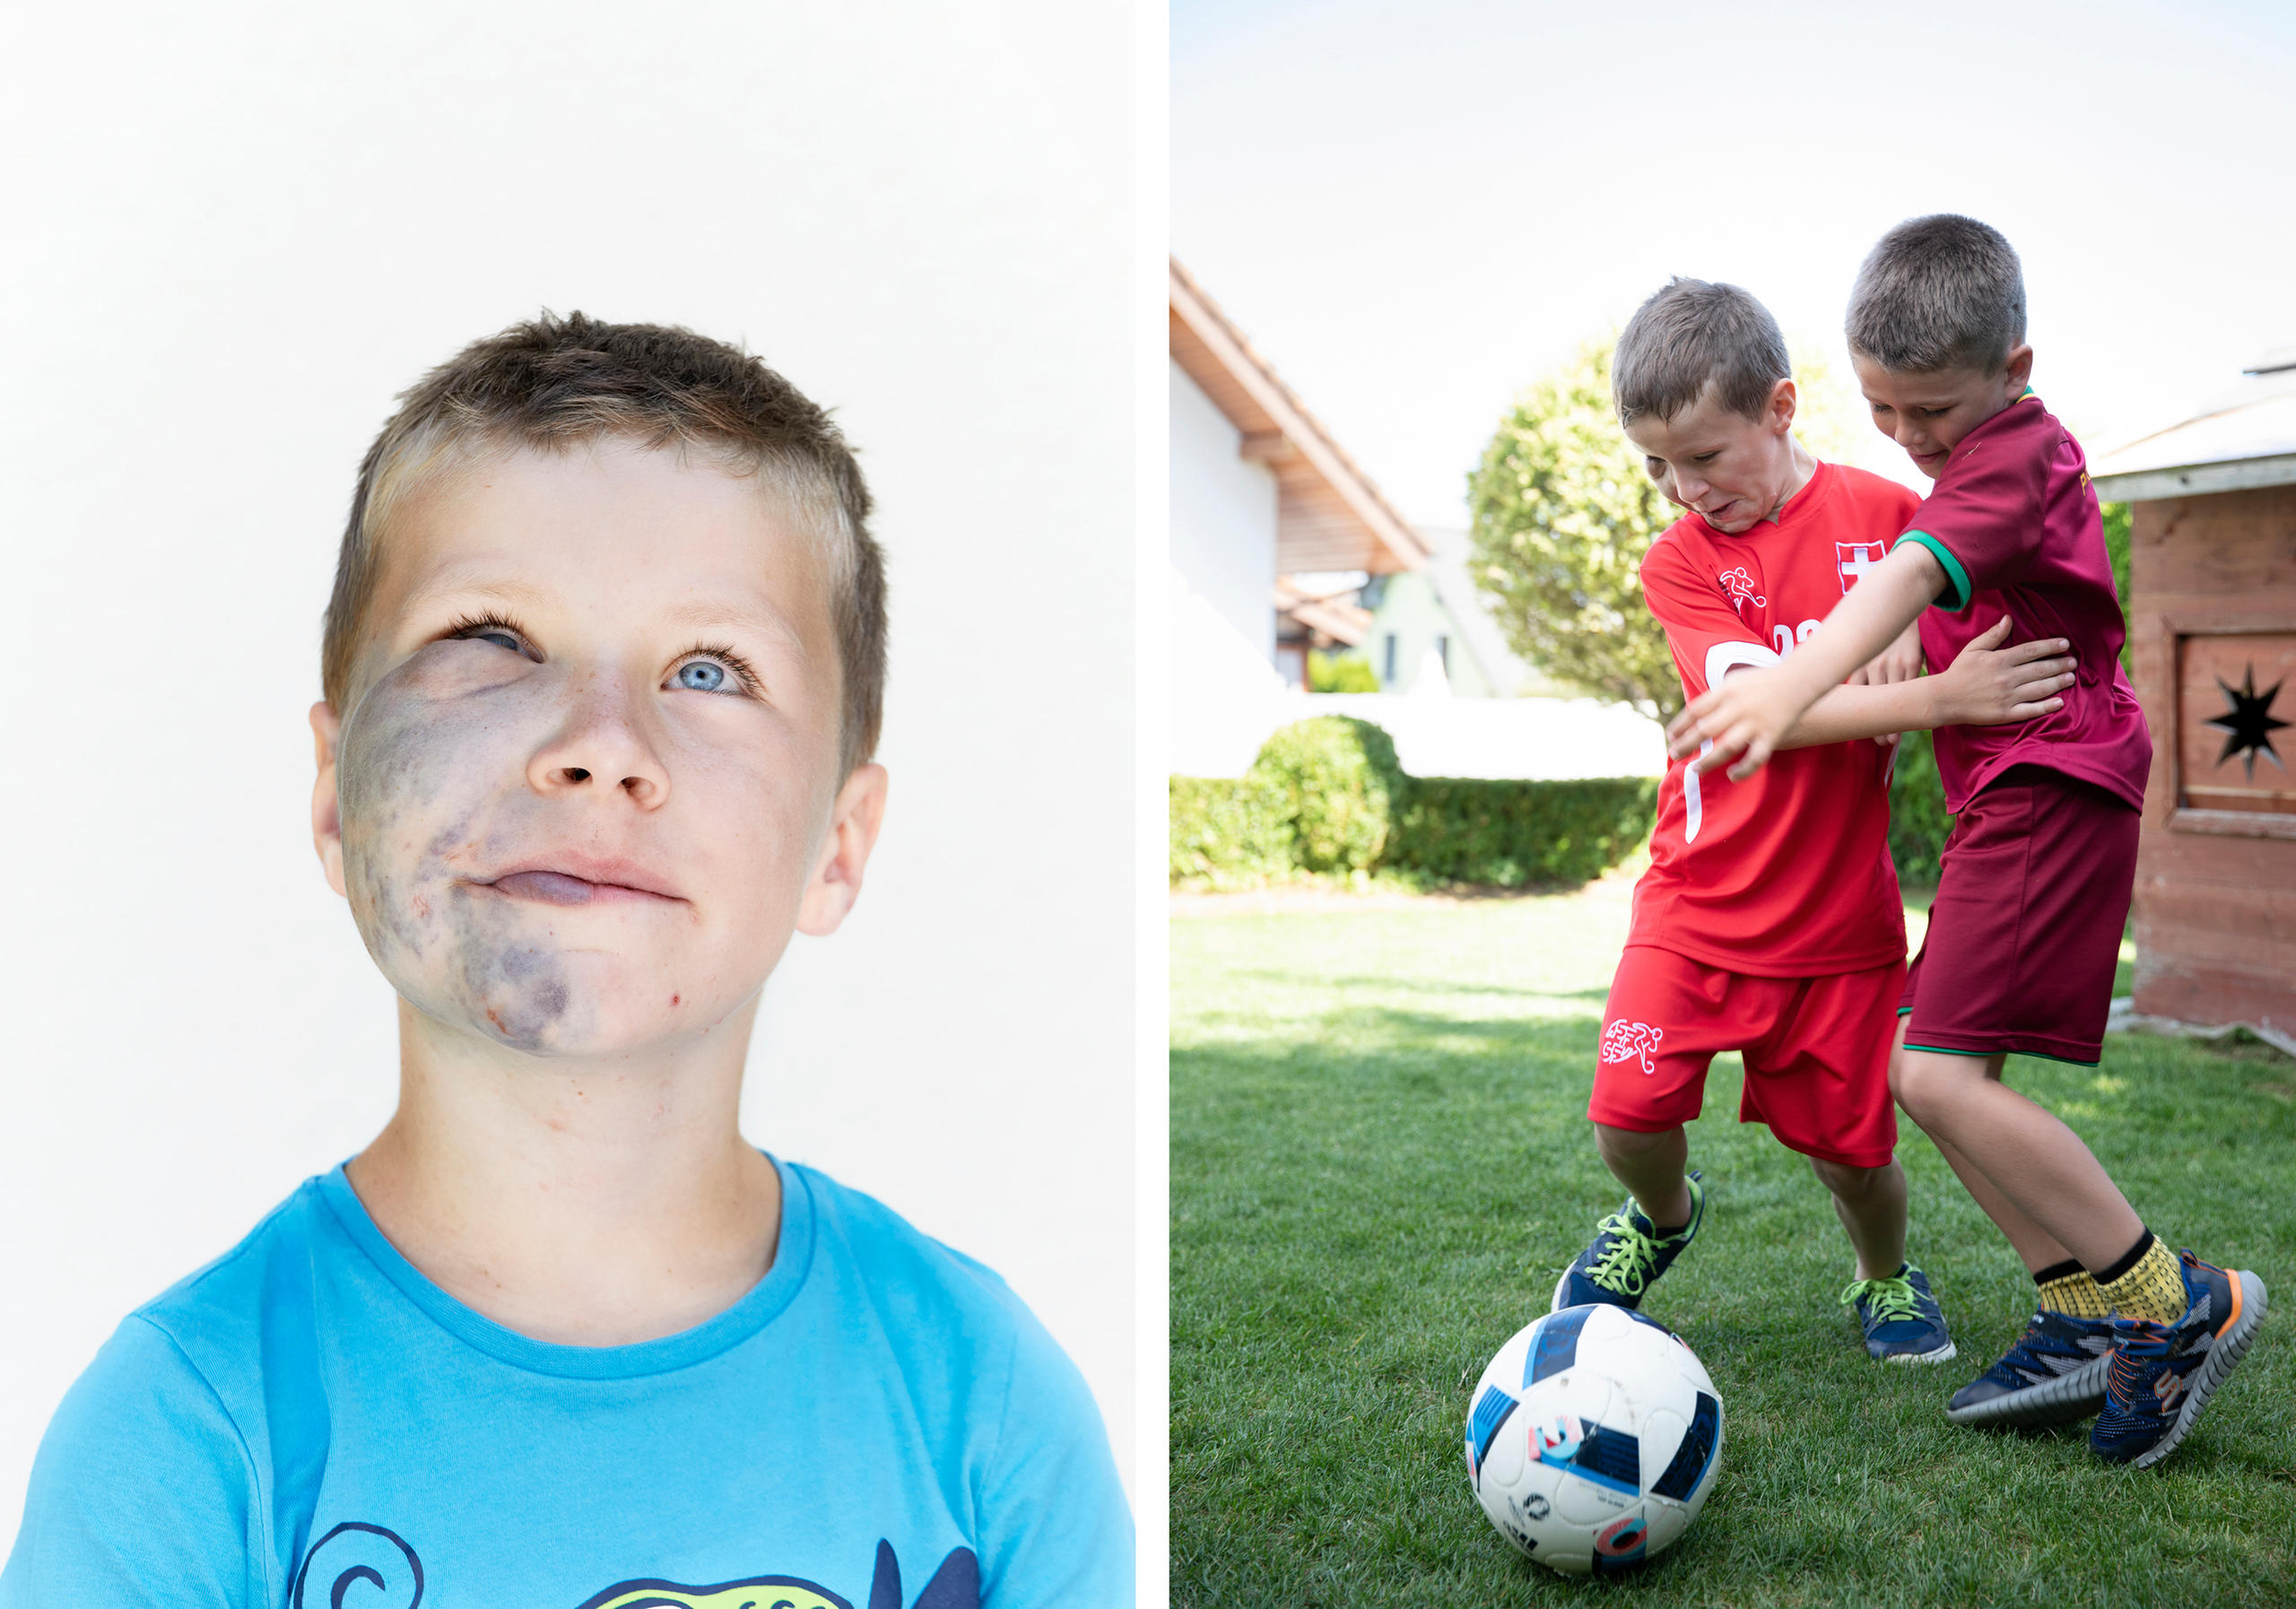 двойной портрет мальчика с дефектами кожи лица, улыбающимся и во время игры в футбол